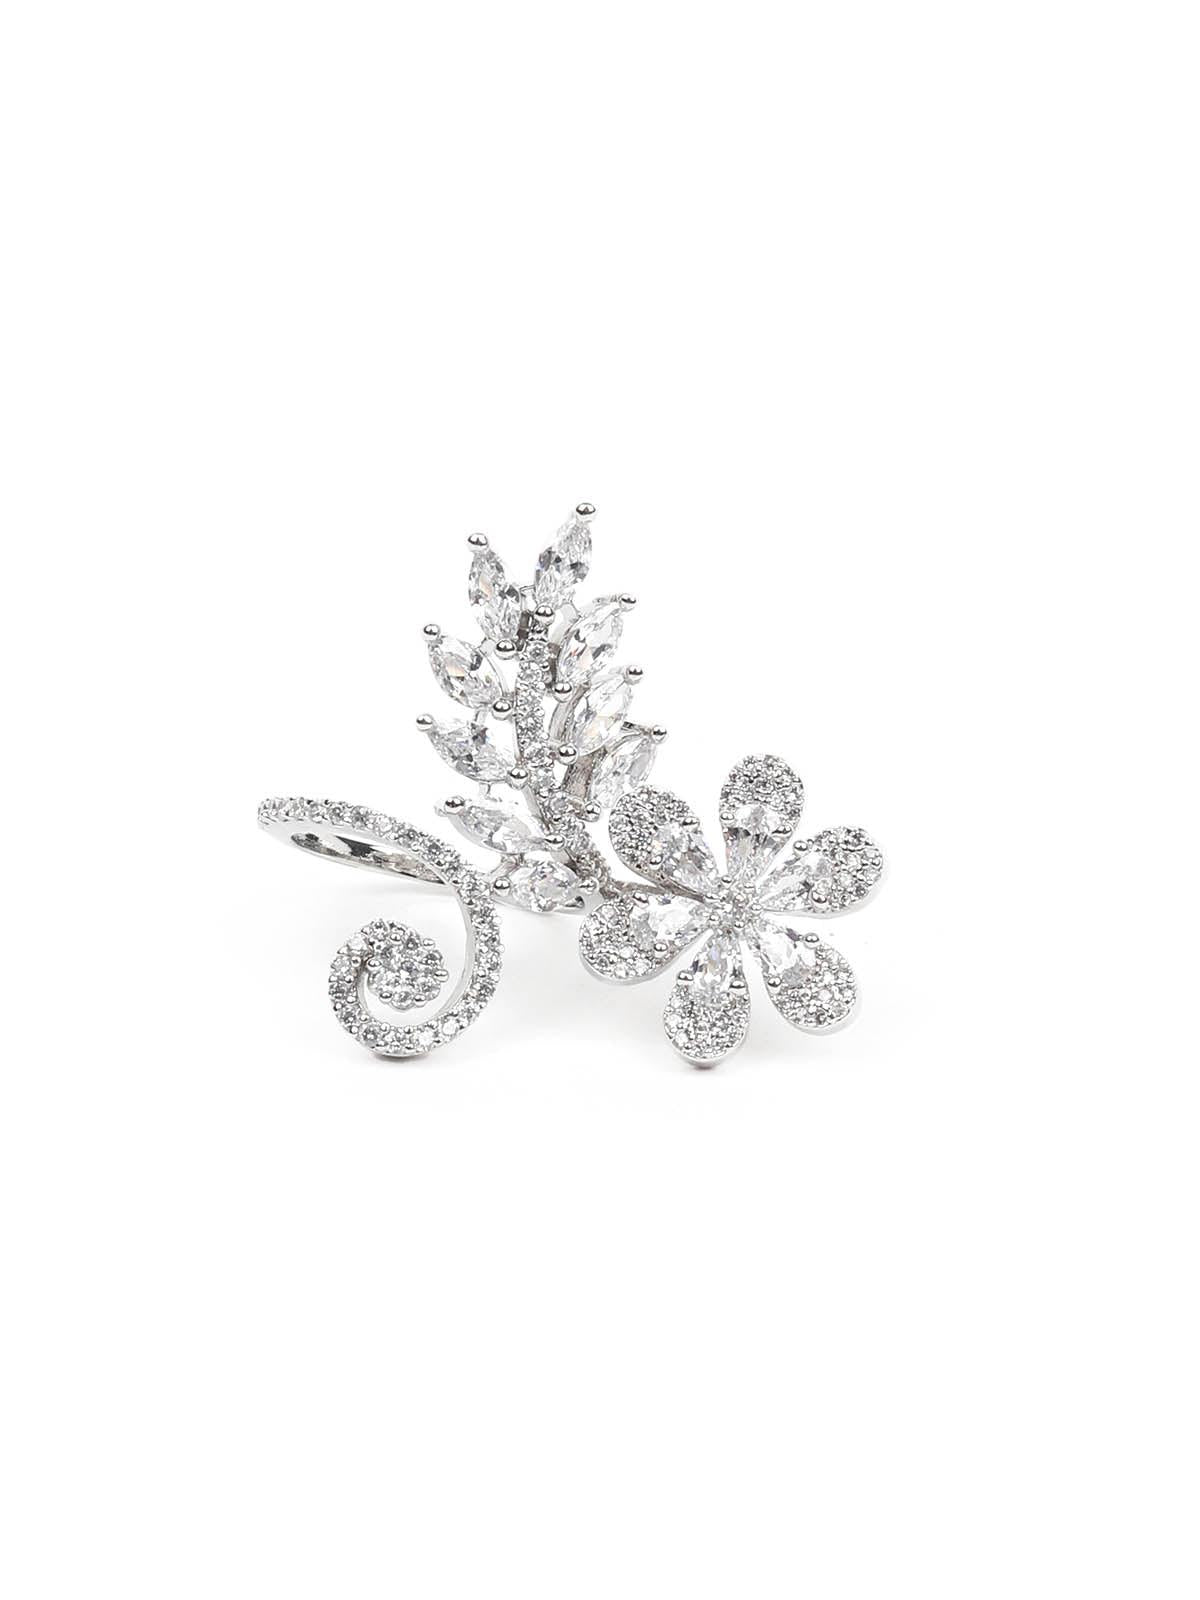 Women's Sparkling Rhodium Embellished Ring - Odette